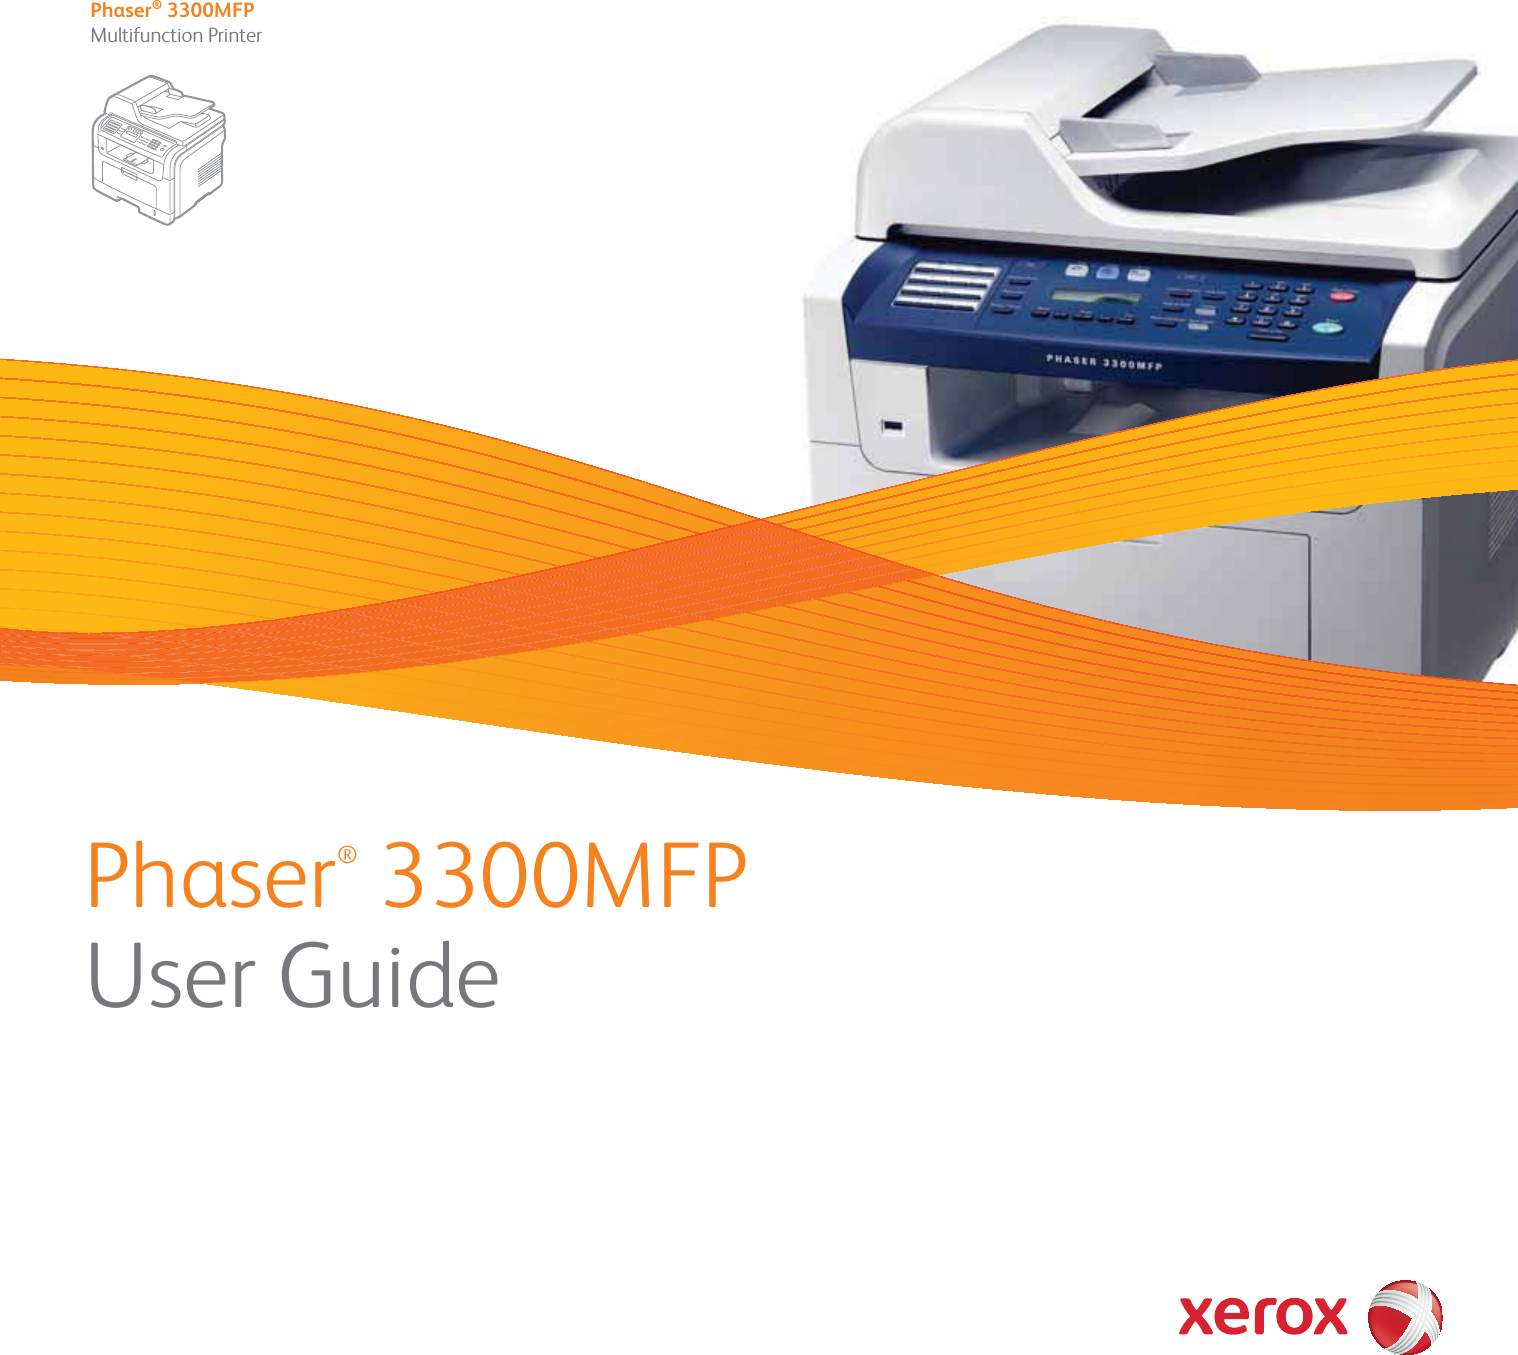 Phaser® 3300MFPUser GuidePhaser® 3300MFPMultifunction Printer